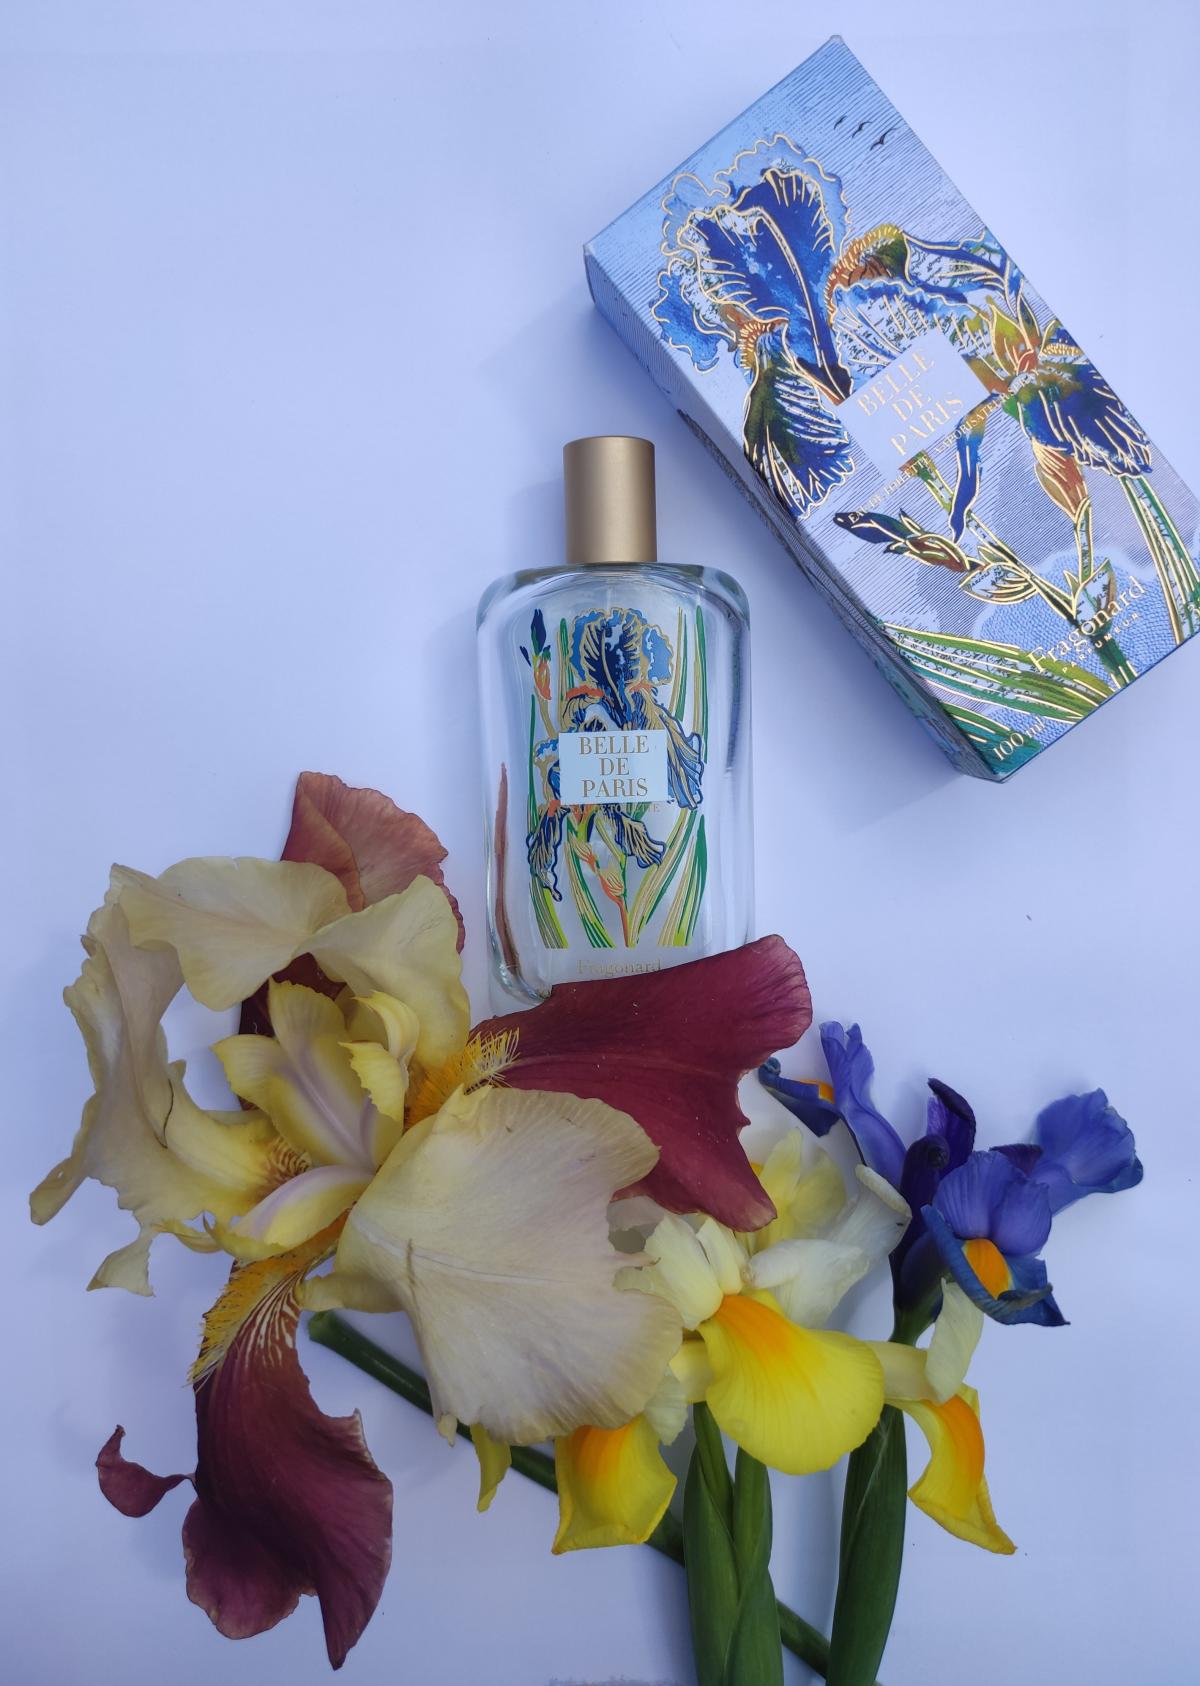 Belle De Paris Fragonard perfume - a fragrance for women 2021